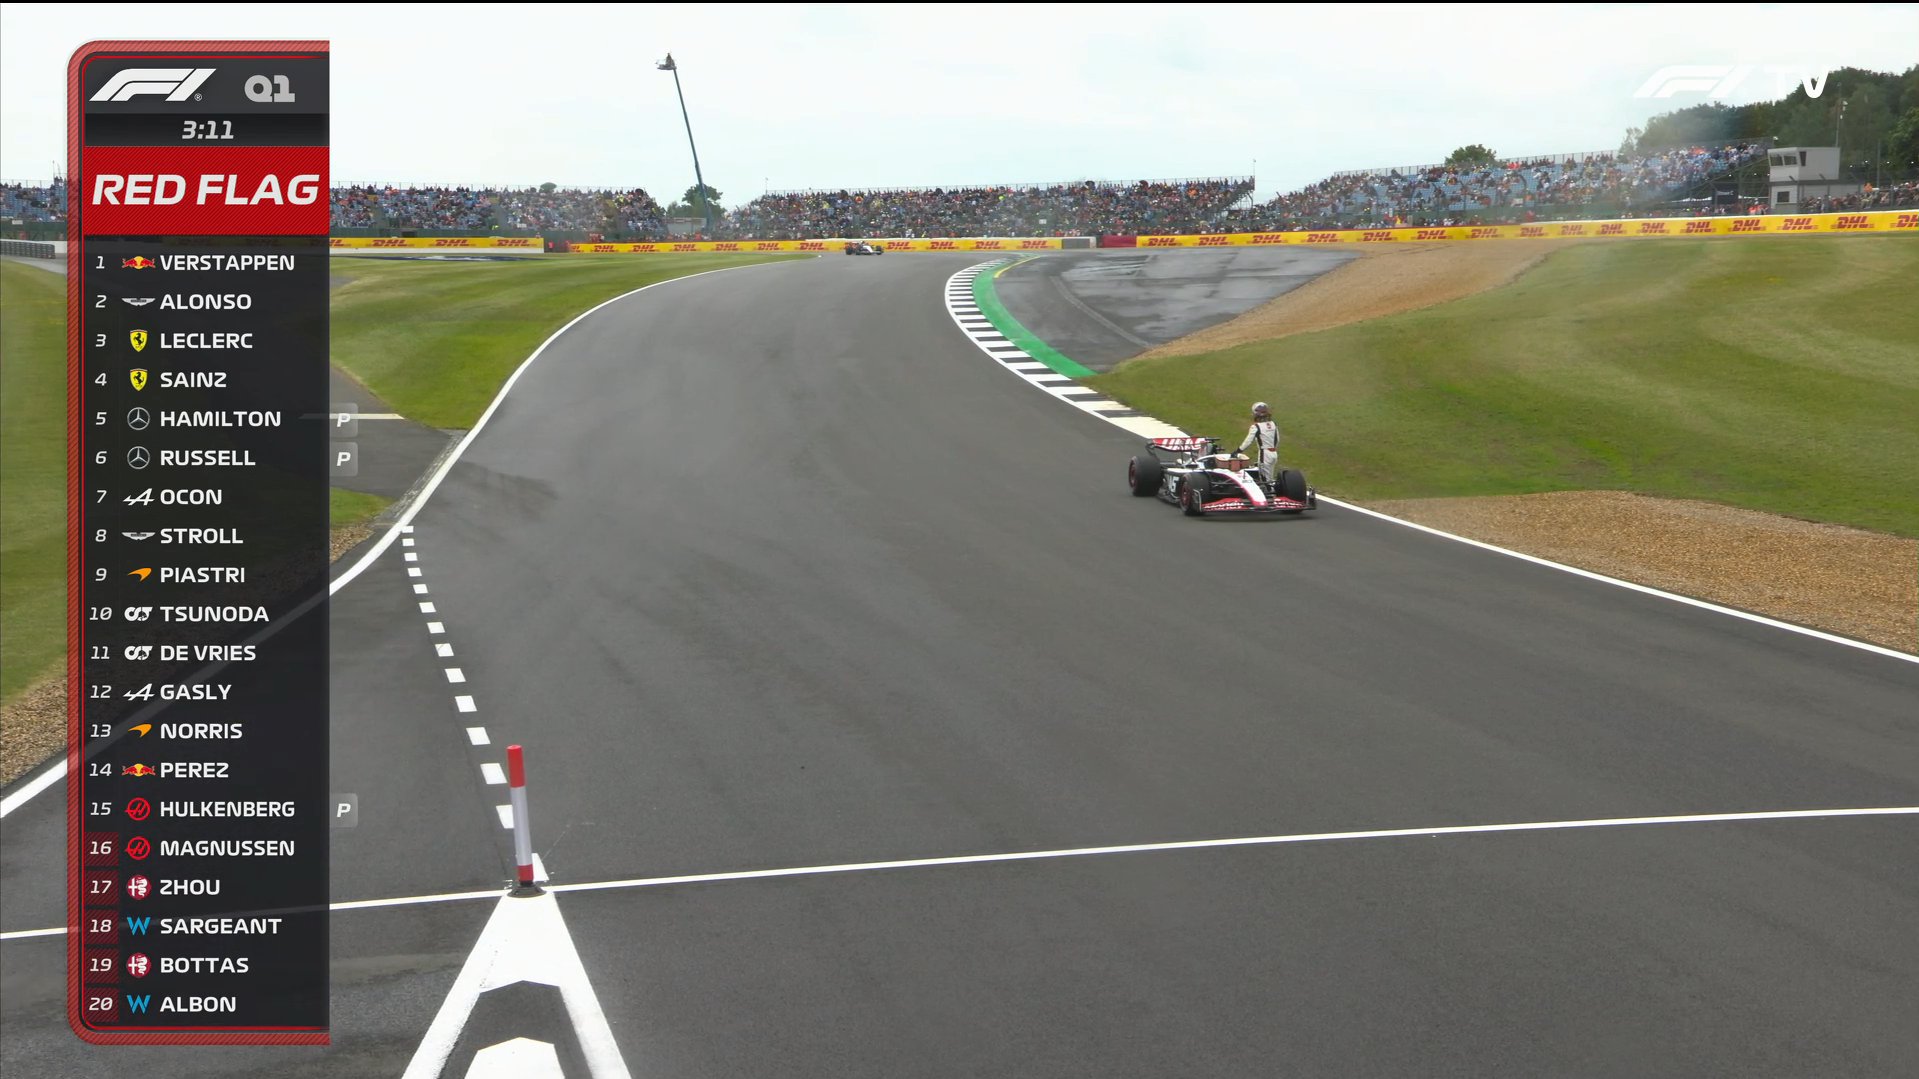 Magnussen sofre ‘apagão’, para na pista e causa bandeira vermelha no Q1 do GP da Inglaterra